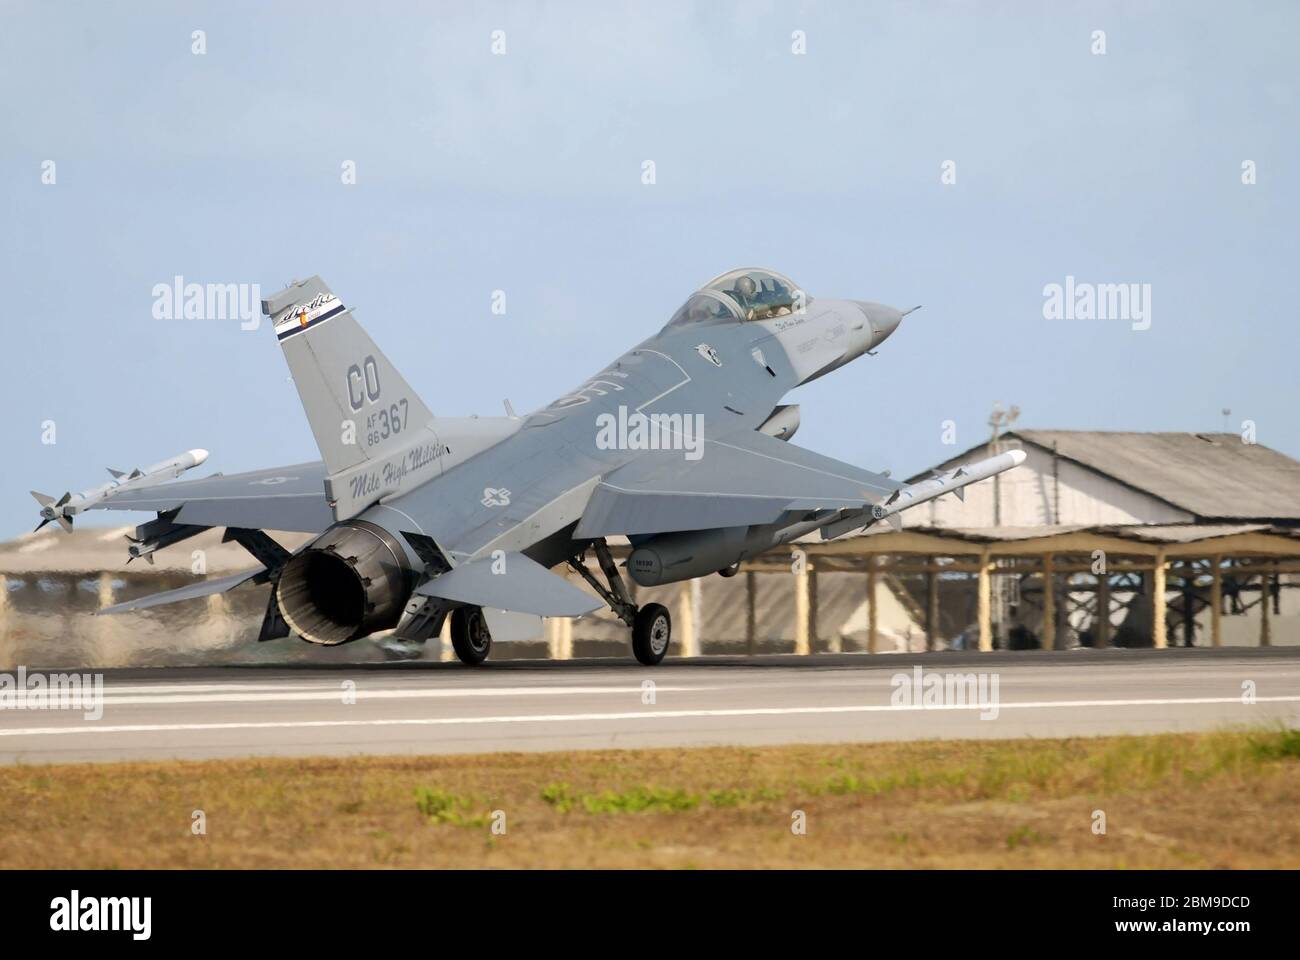 Natal, Brasile, 9 novembre 2010. F-16 caccia jet della United States Air Force - alla base aerea Natal nel nord-est del Brasile. Foto Stock